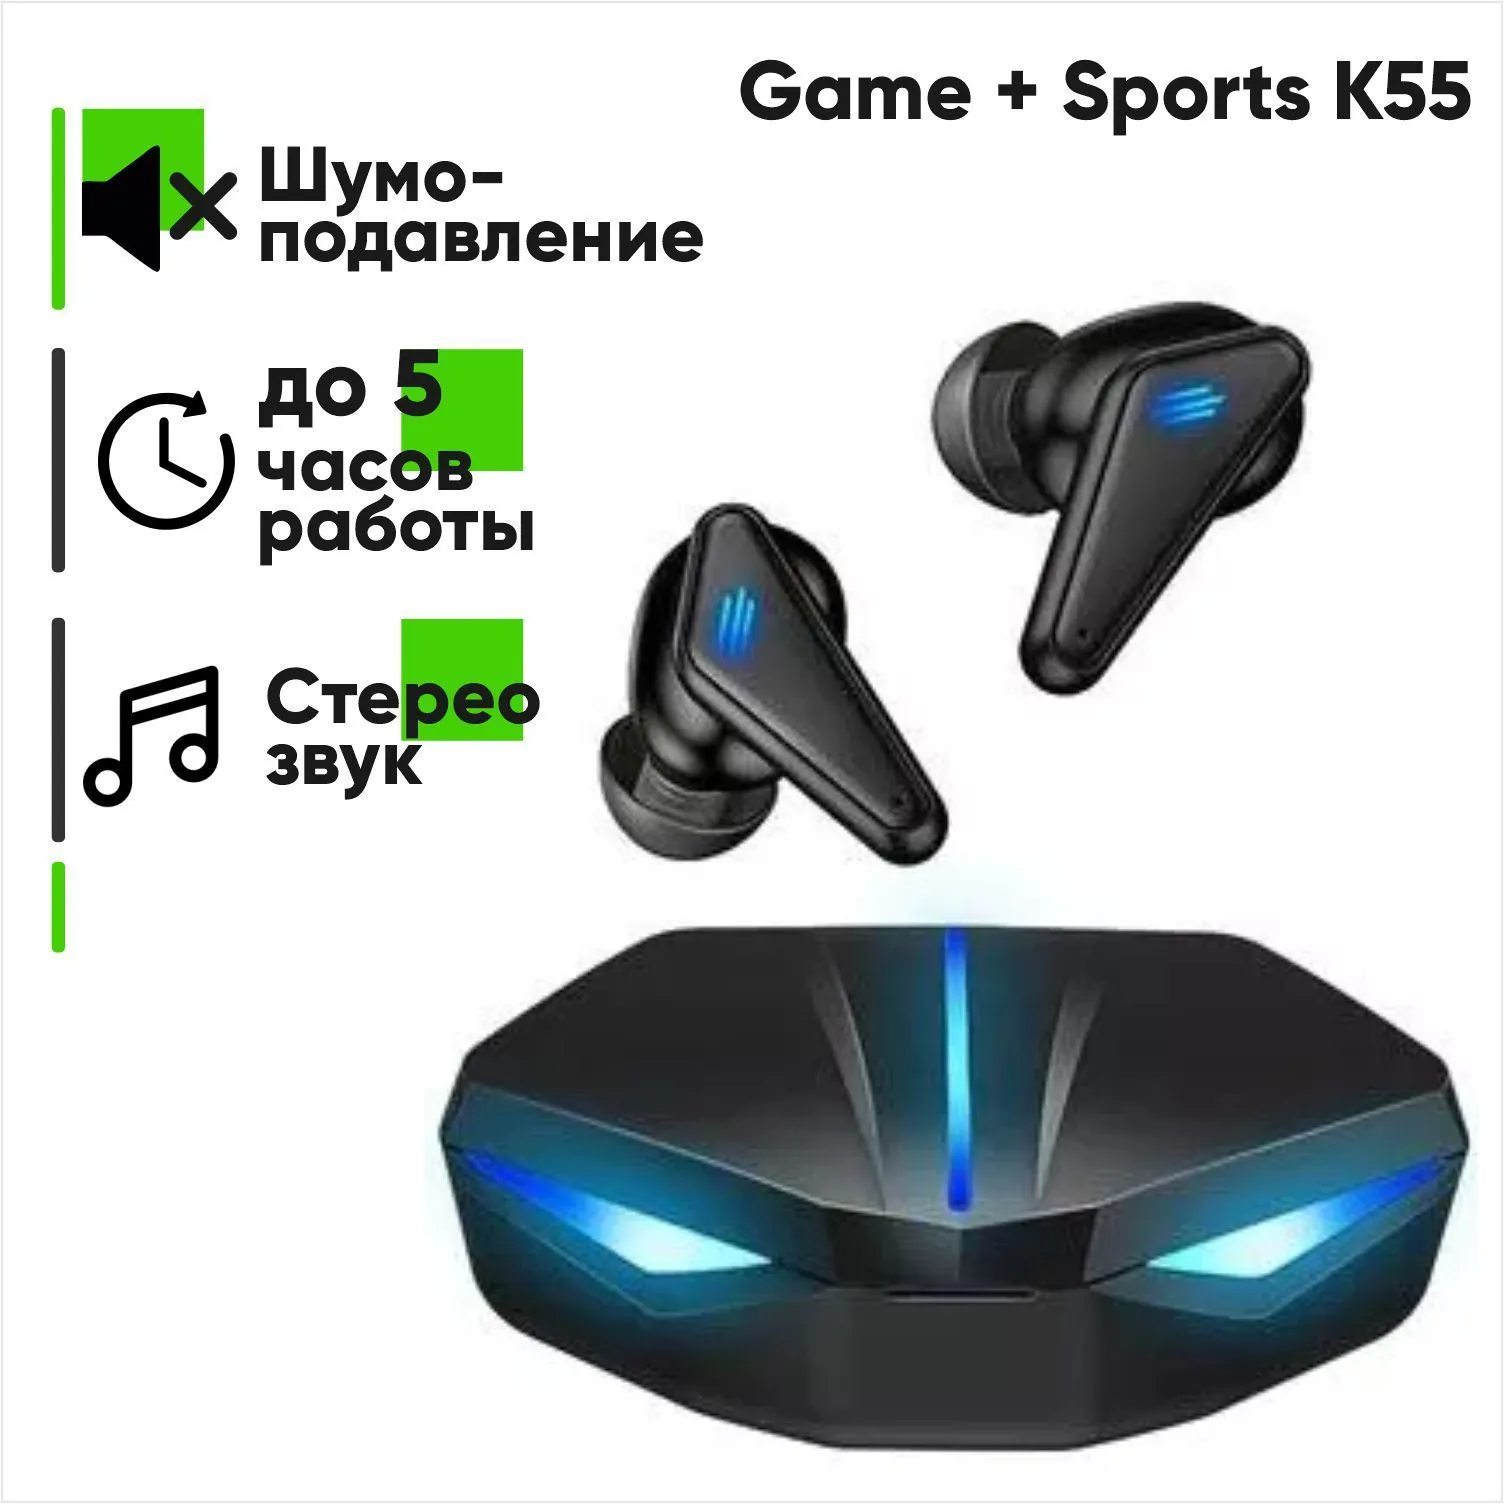 Беспроводная гарнитура Bluetooth Game + Sports K55 с кейсом (черный)